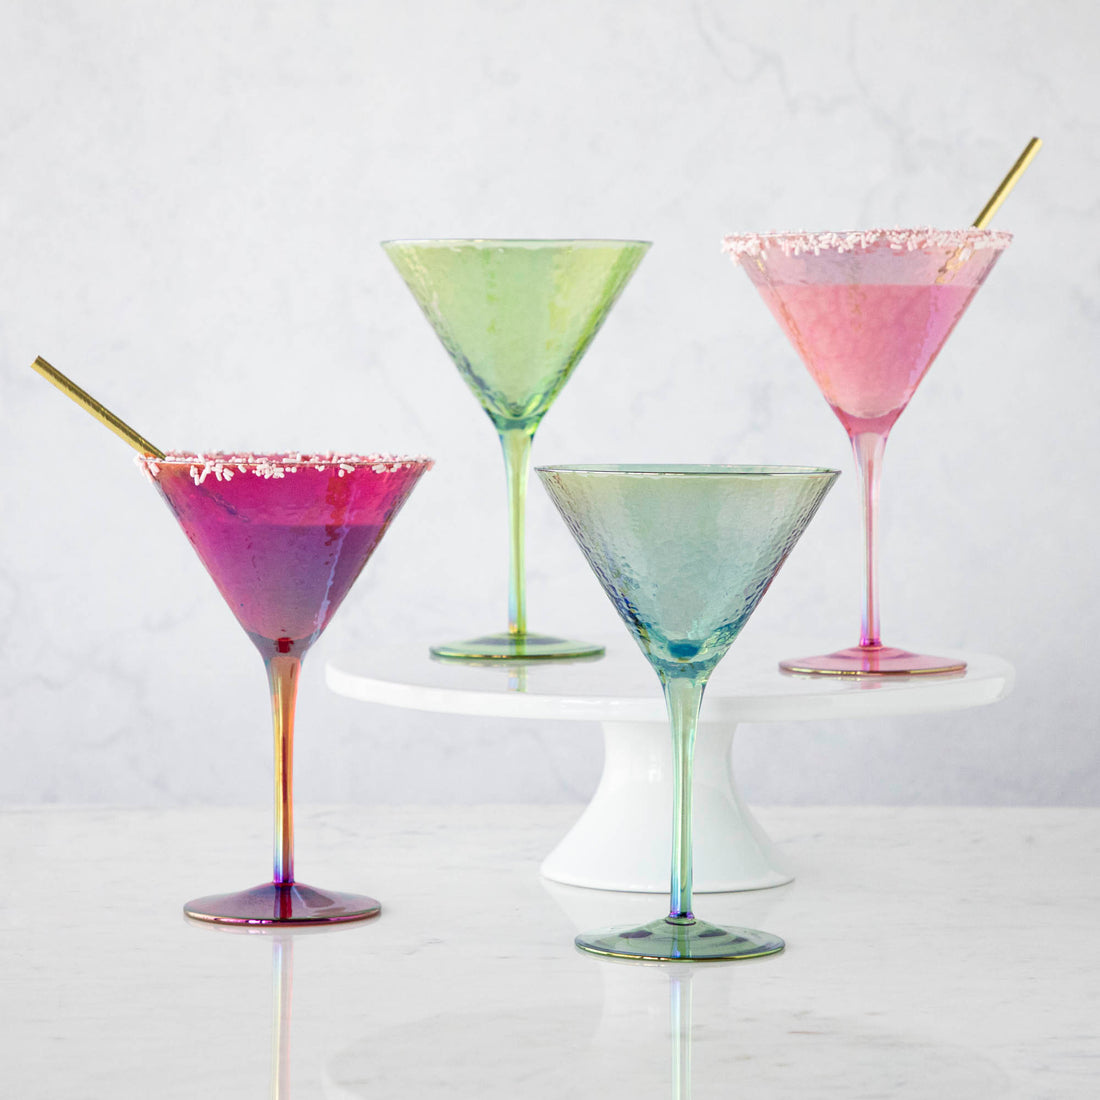 Luster Aperitivo Martini Glass